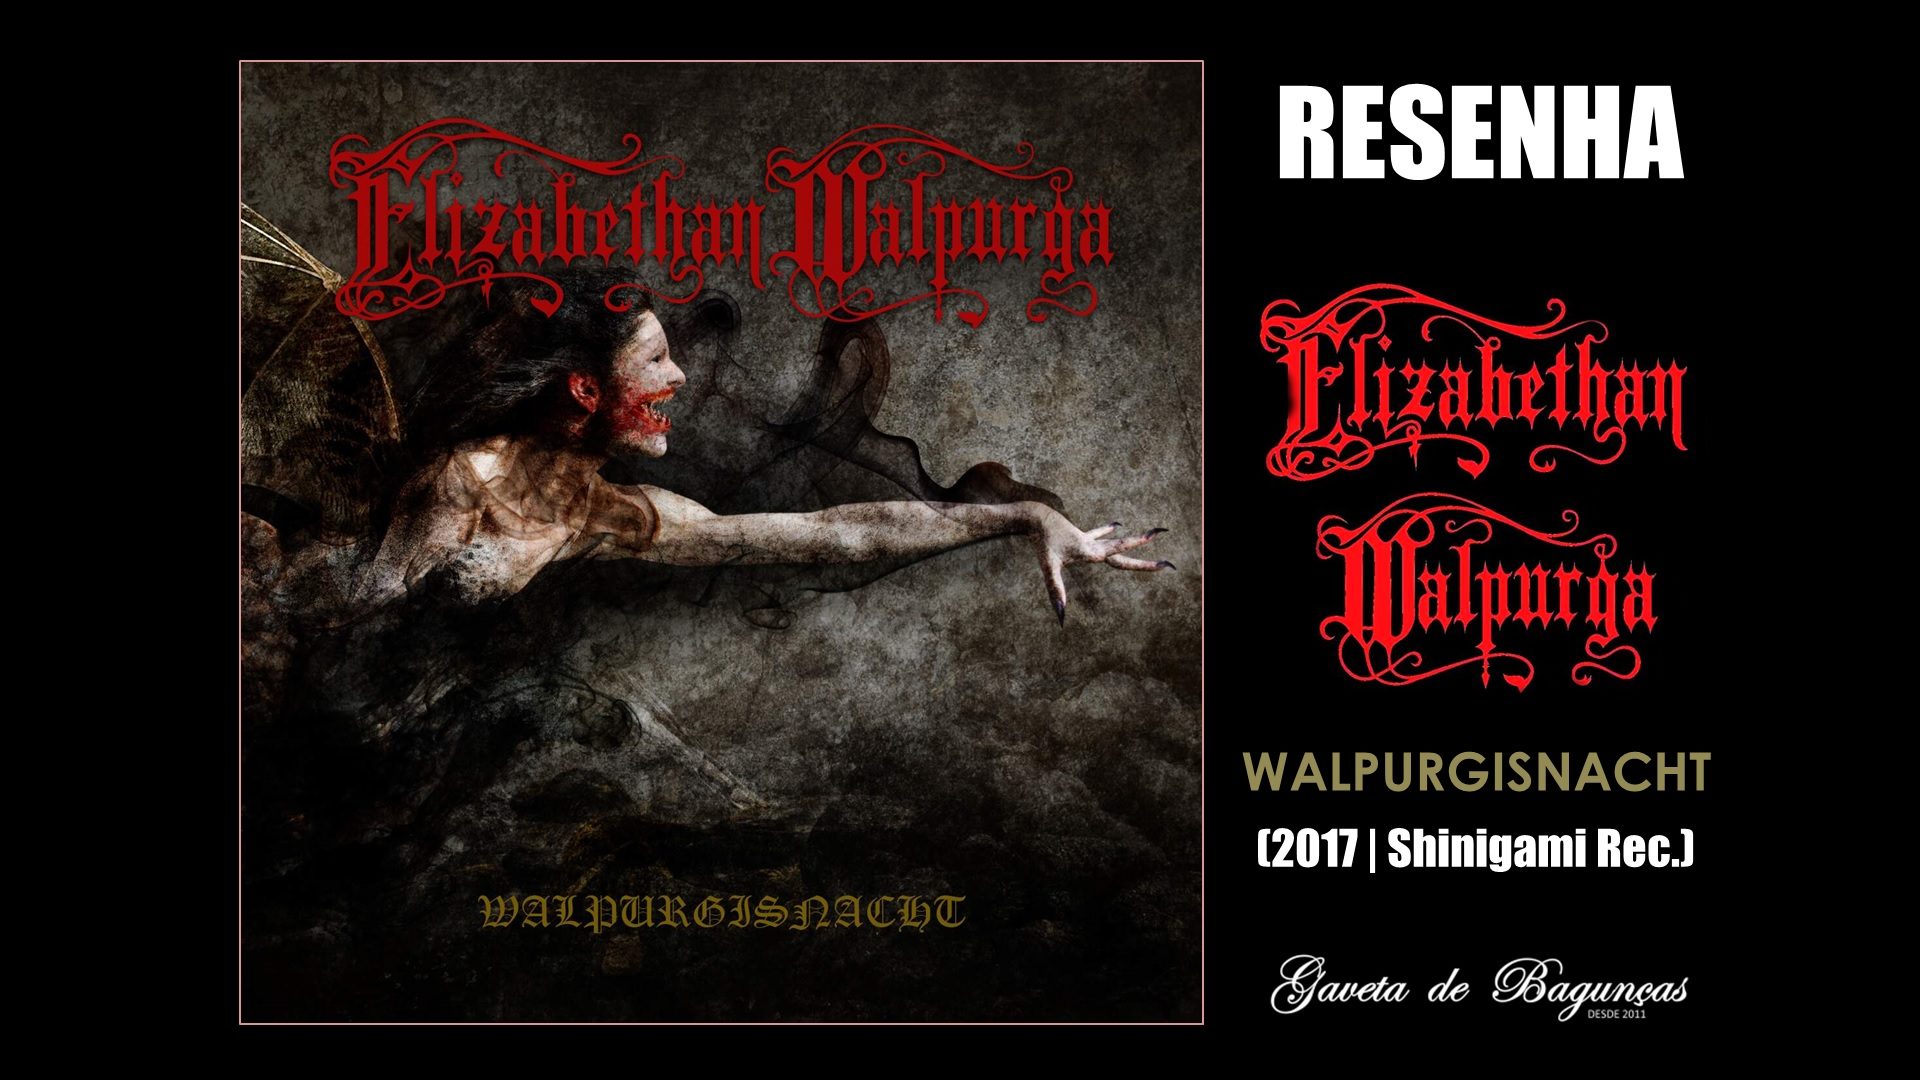 Elizabethan Walpurga - Walpurgisnacht (2017)